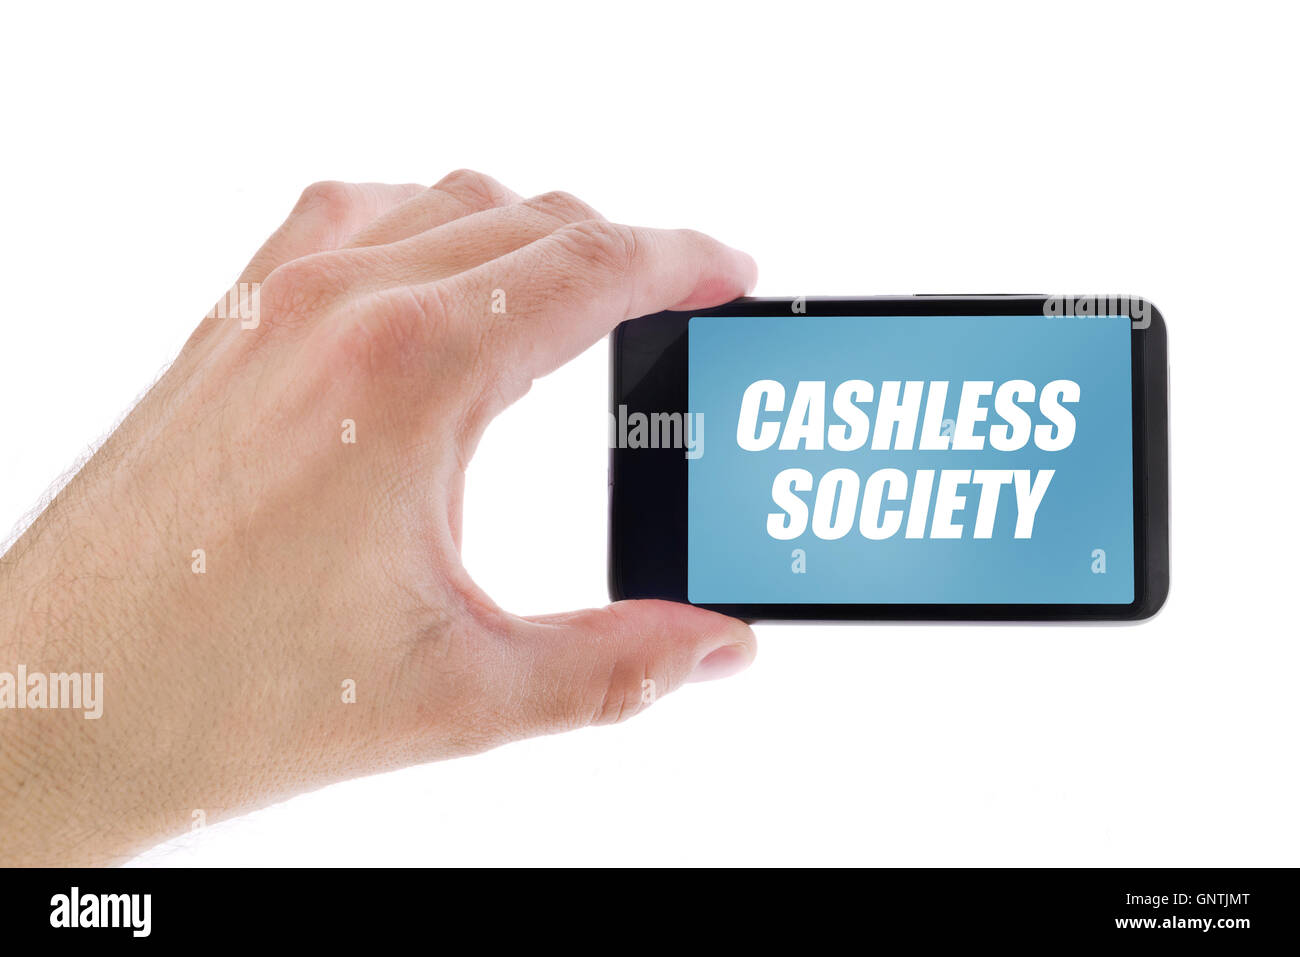 Businessman holding smartphone avec société sans espèces titre, concept de la promotion des paiements électroniques et mobiles sans paiement Banque D'Images